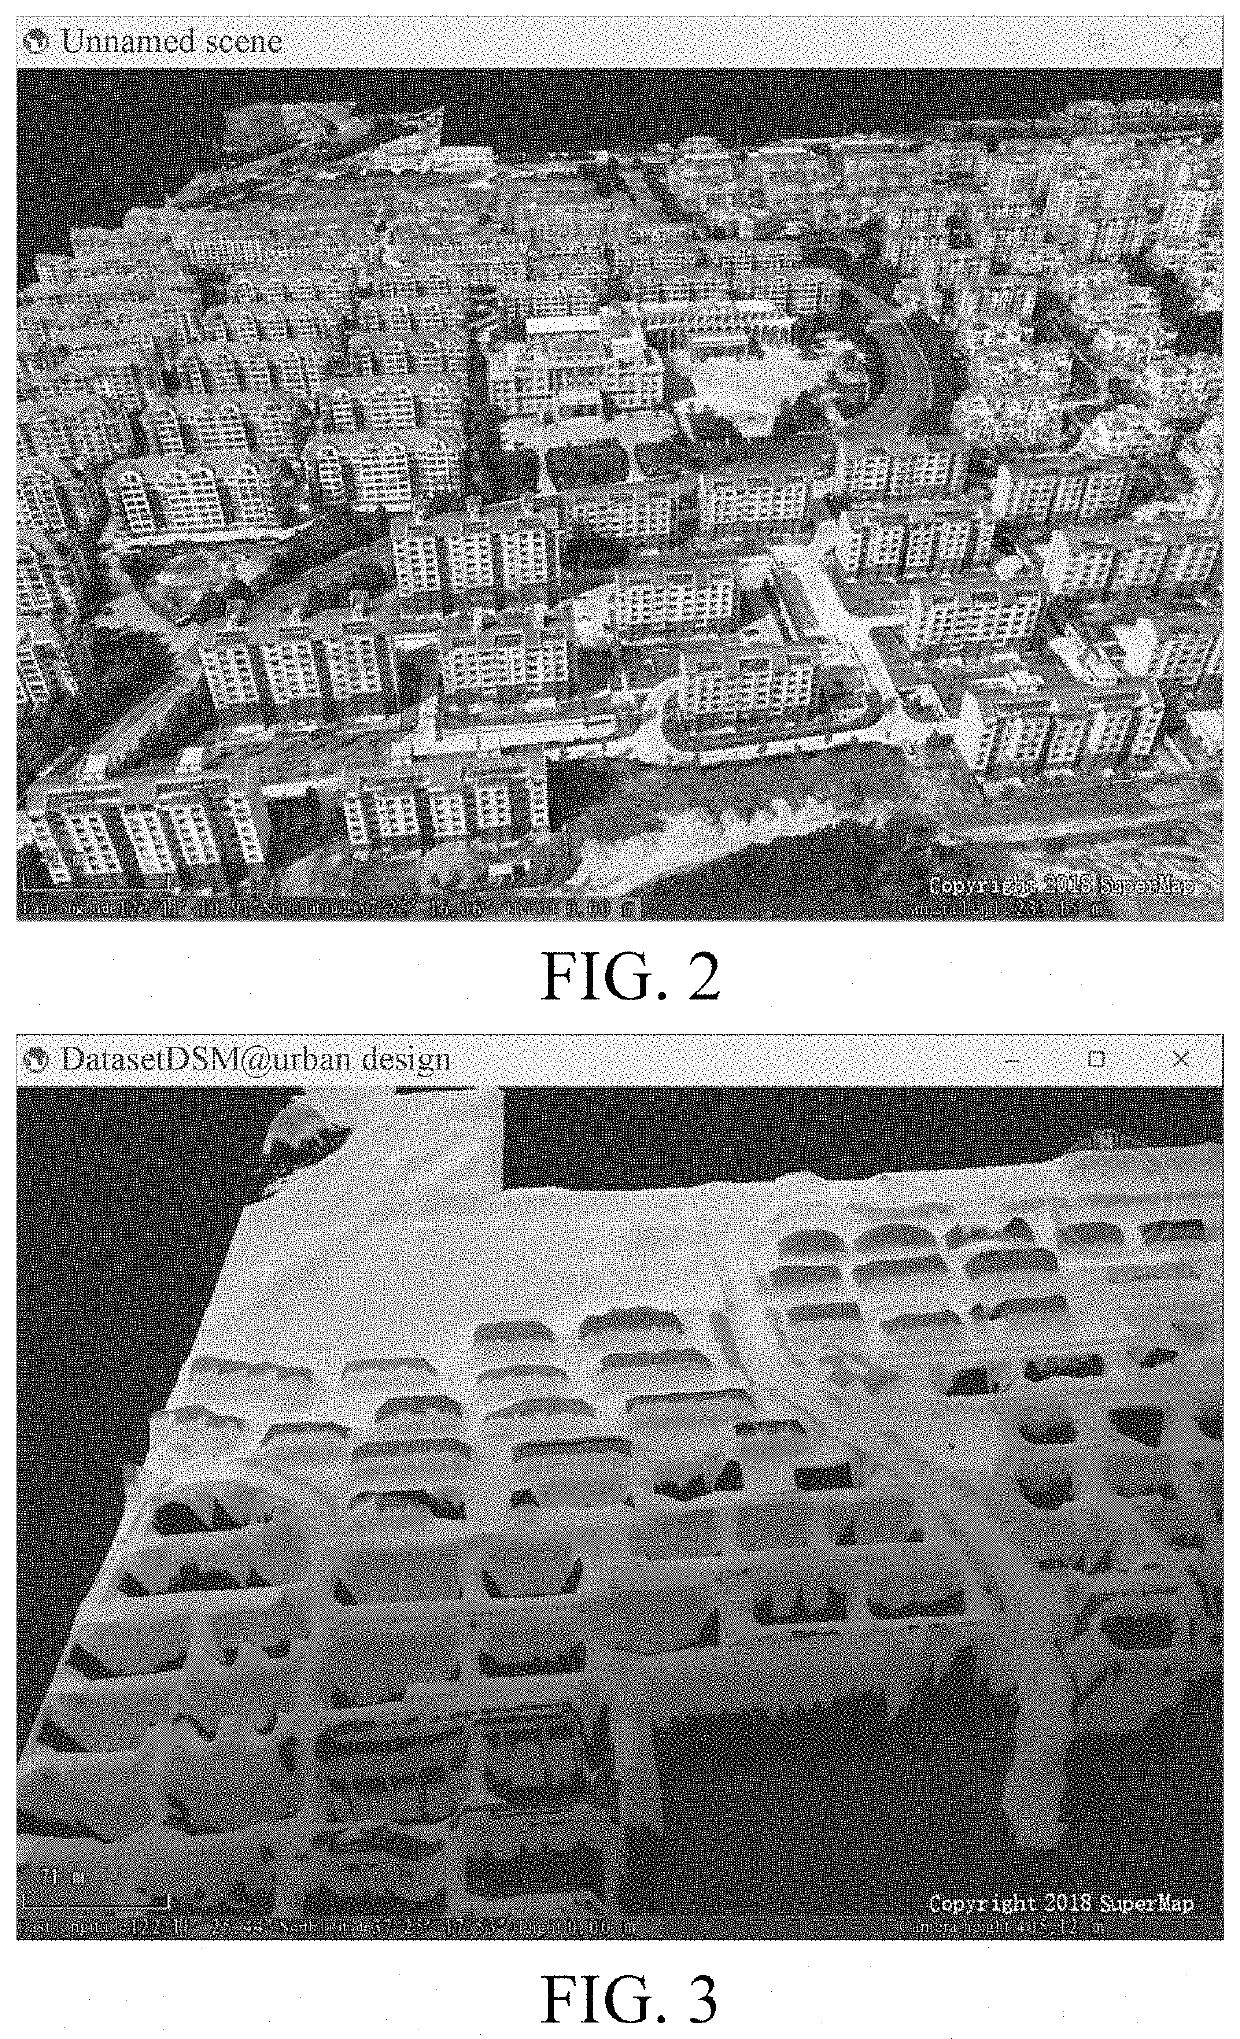 Embedded urban design scene emulation method and system